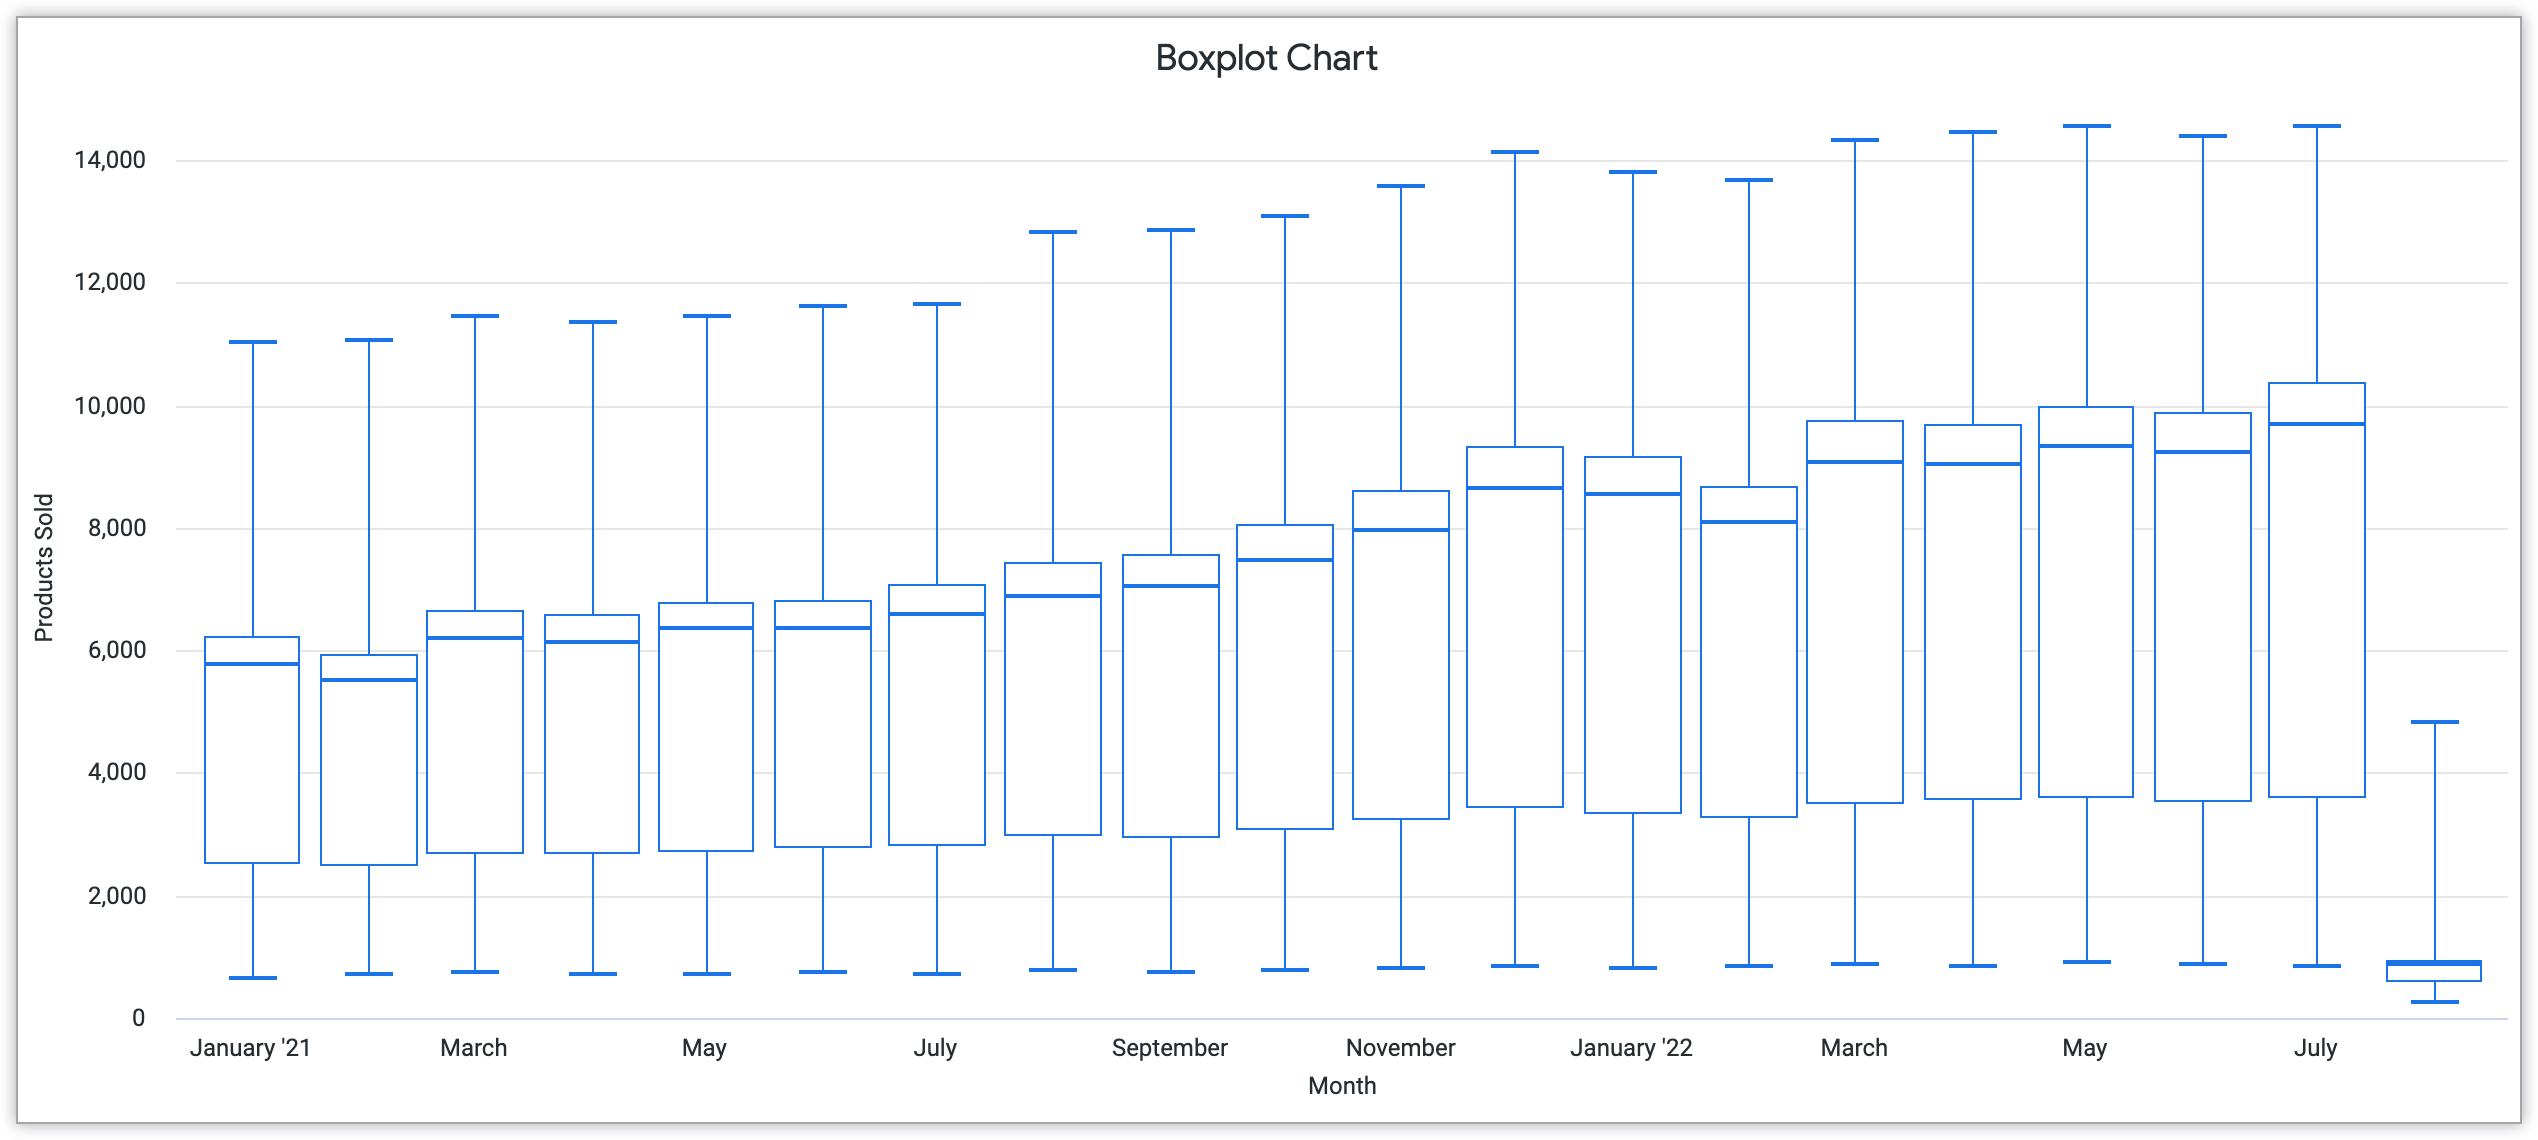 Graphique en boîte montrant le mois sur l'axe des x et les produits vendus sur l'axe des y